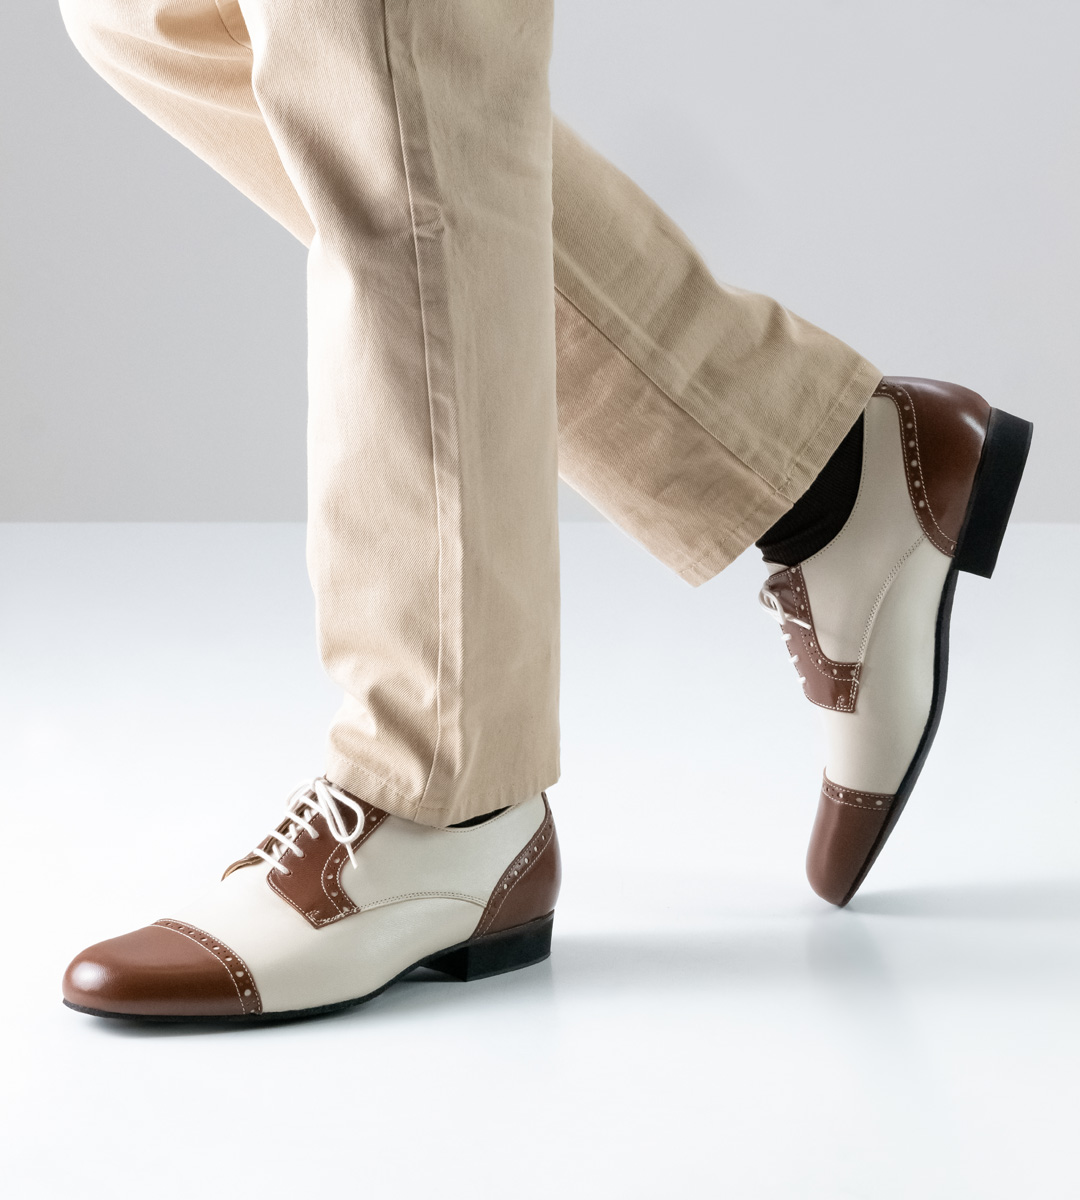 brown-beige men's dance shoe from Werner Kern with 2 cm heel height